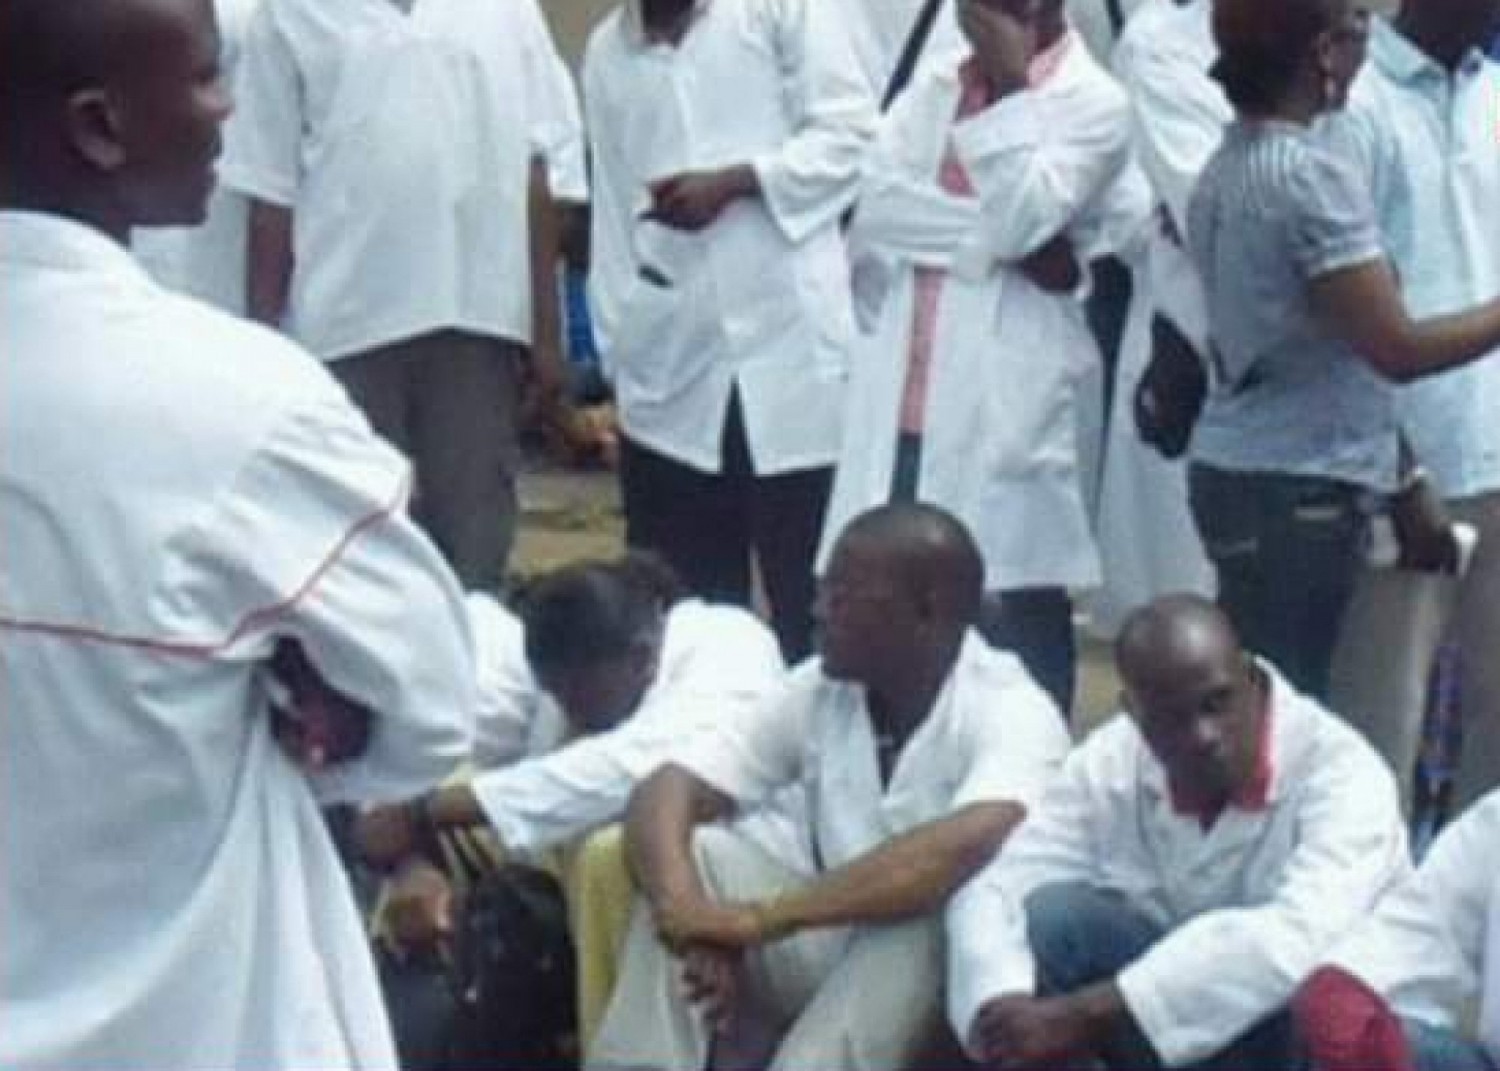 Côte d'Ivoire : Bouaké, un médecin tabassé par le parent d'un patient, l'affaire déclenche une grève au CHU